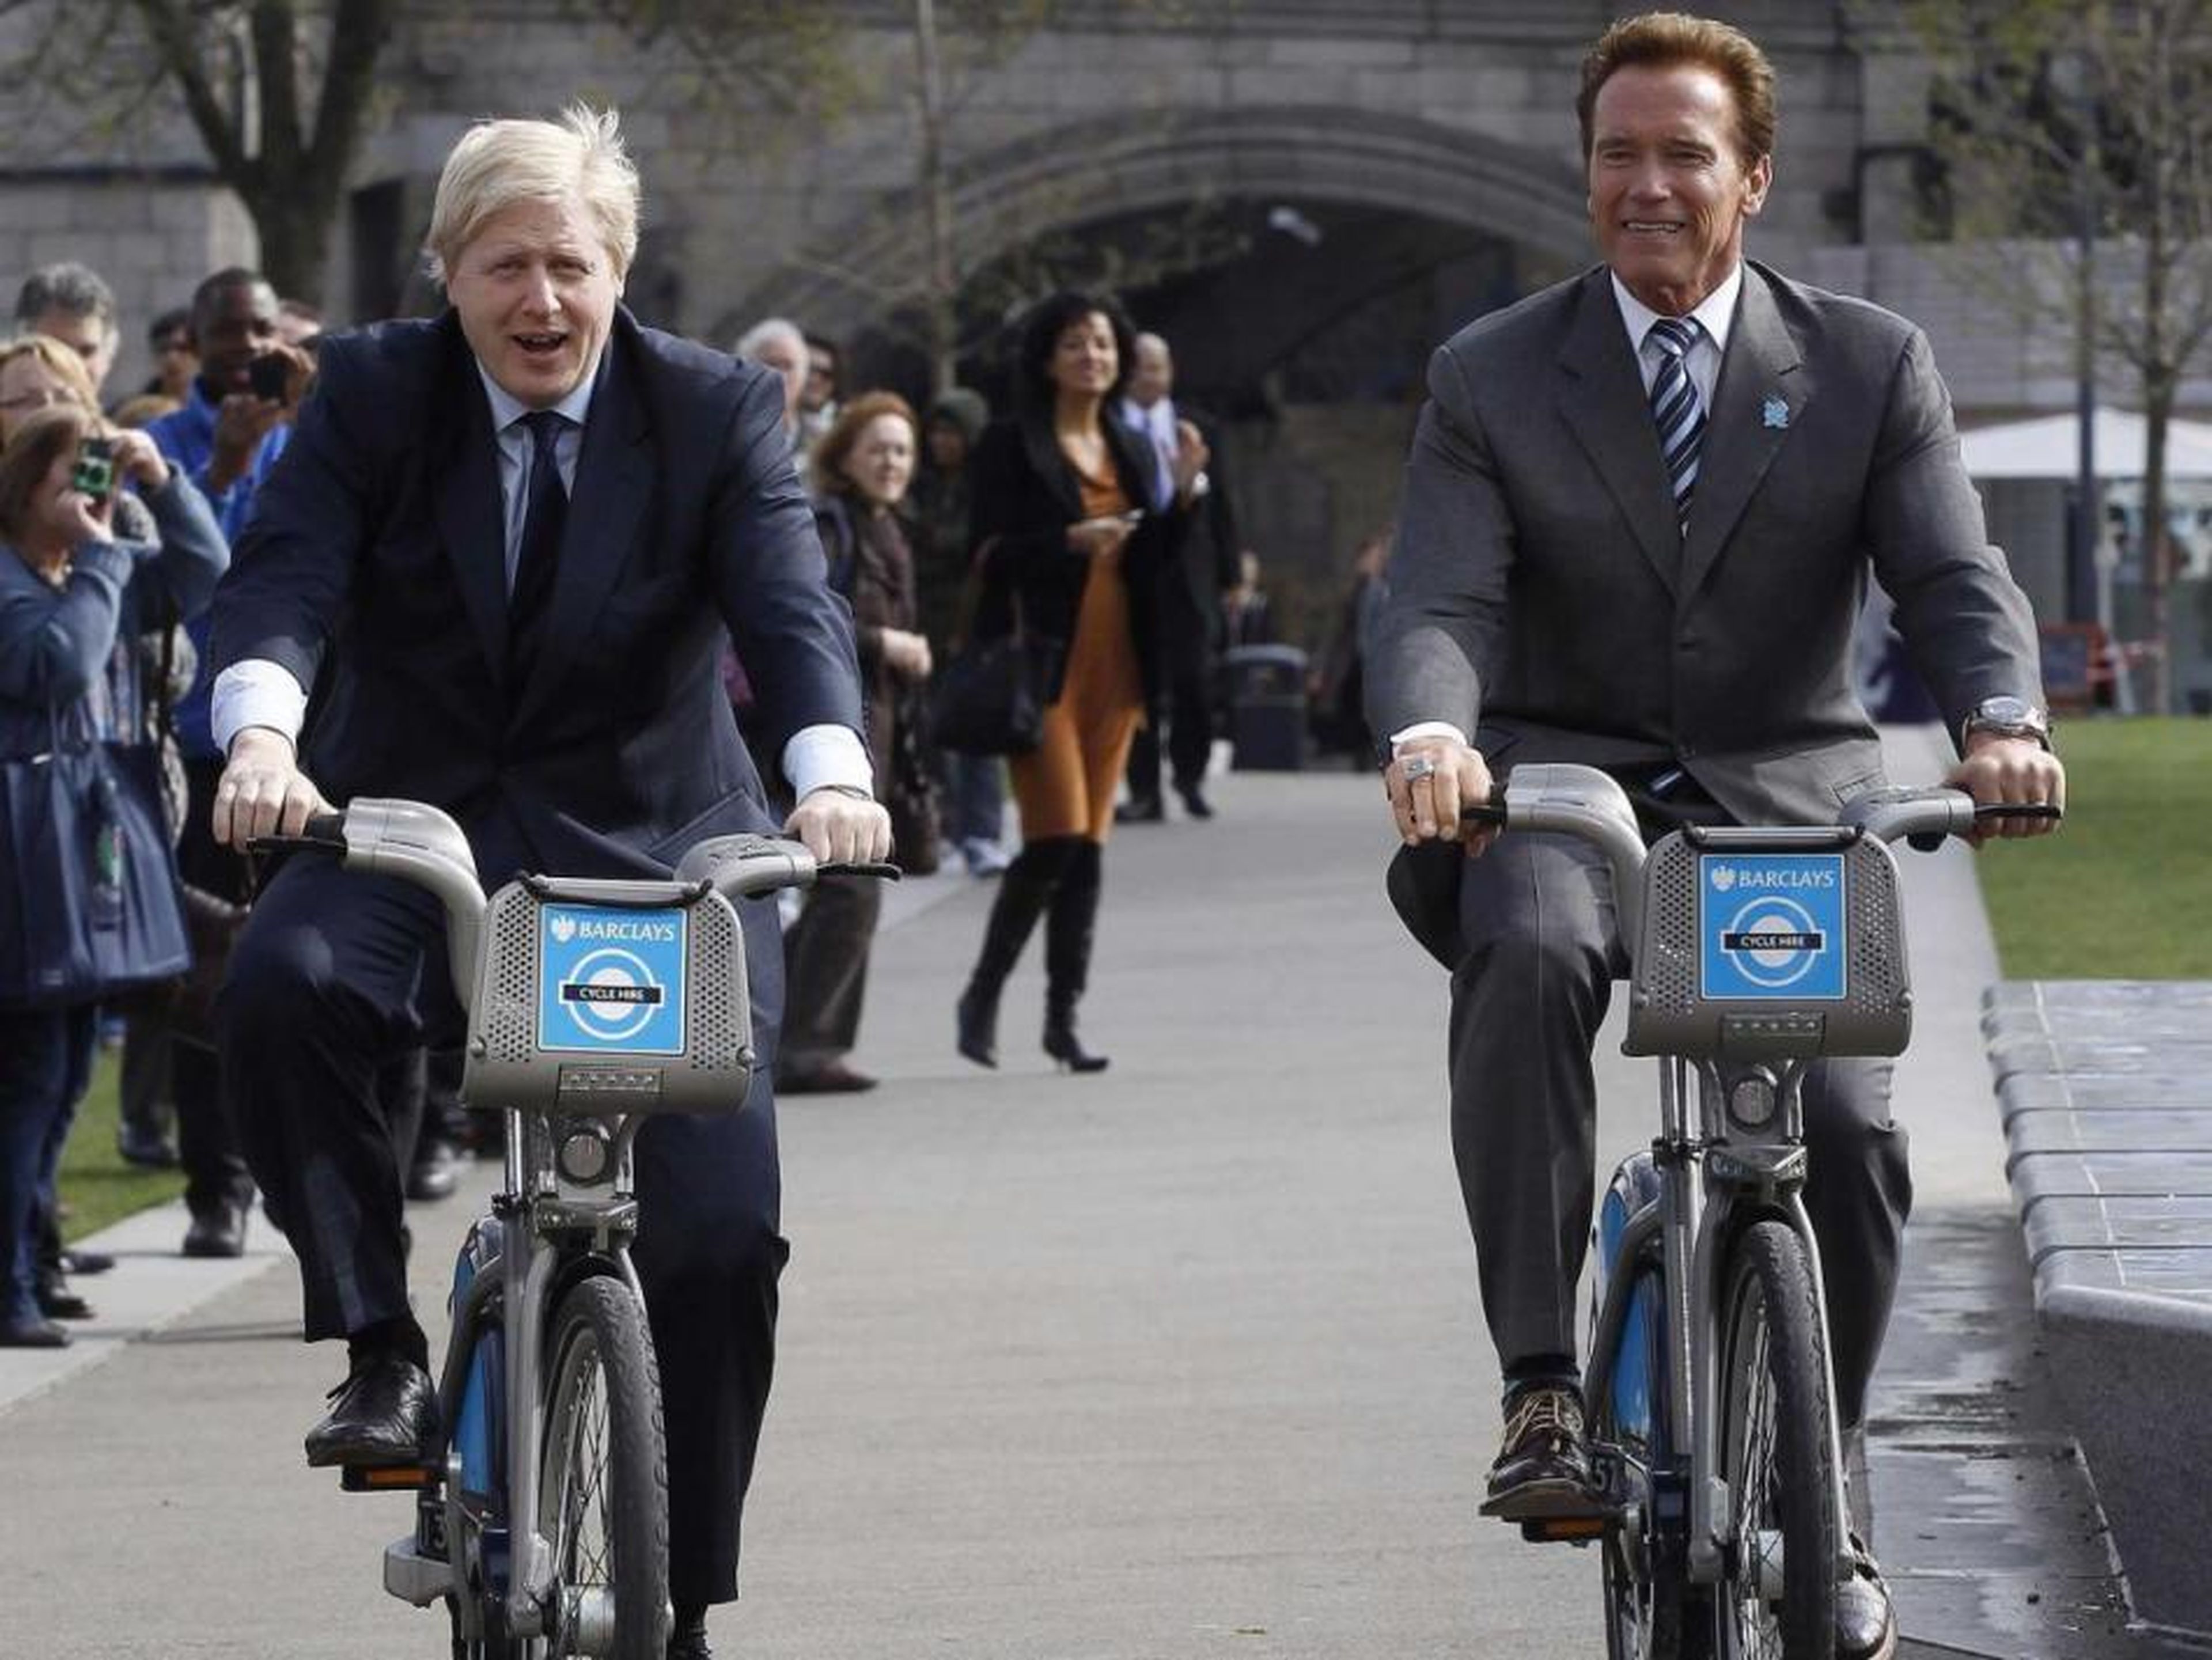 El plan de bicicletas de la ciudad lleva por nombre no oficial "bicicletas Boris". Aquí ves a Johnson disfrutando mientras monta al lado de Arnold Schwarzenegger.